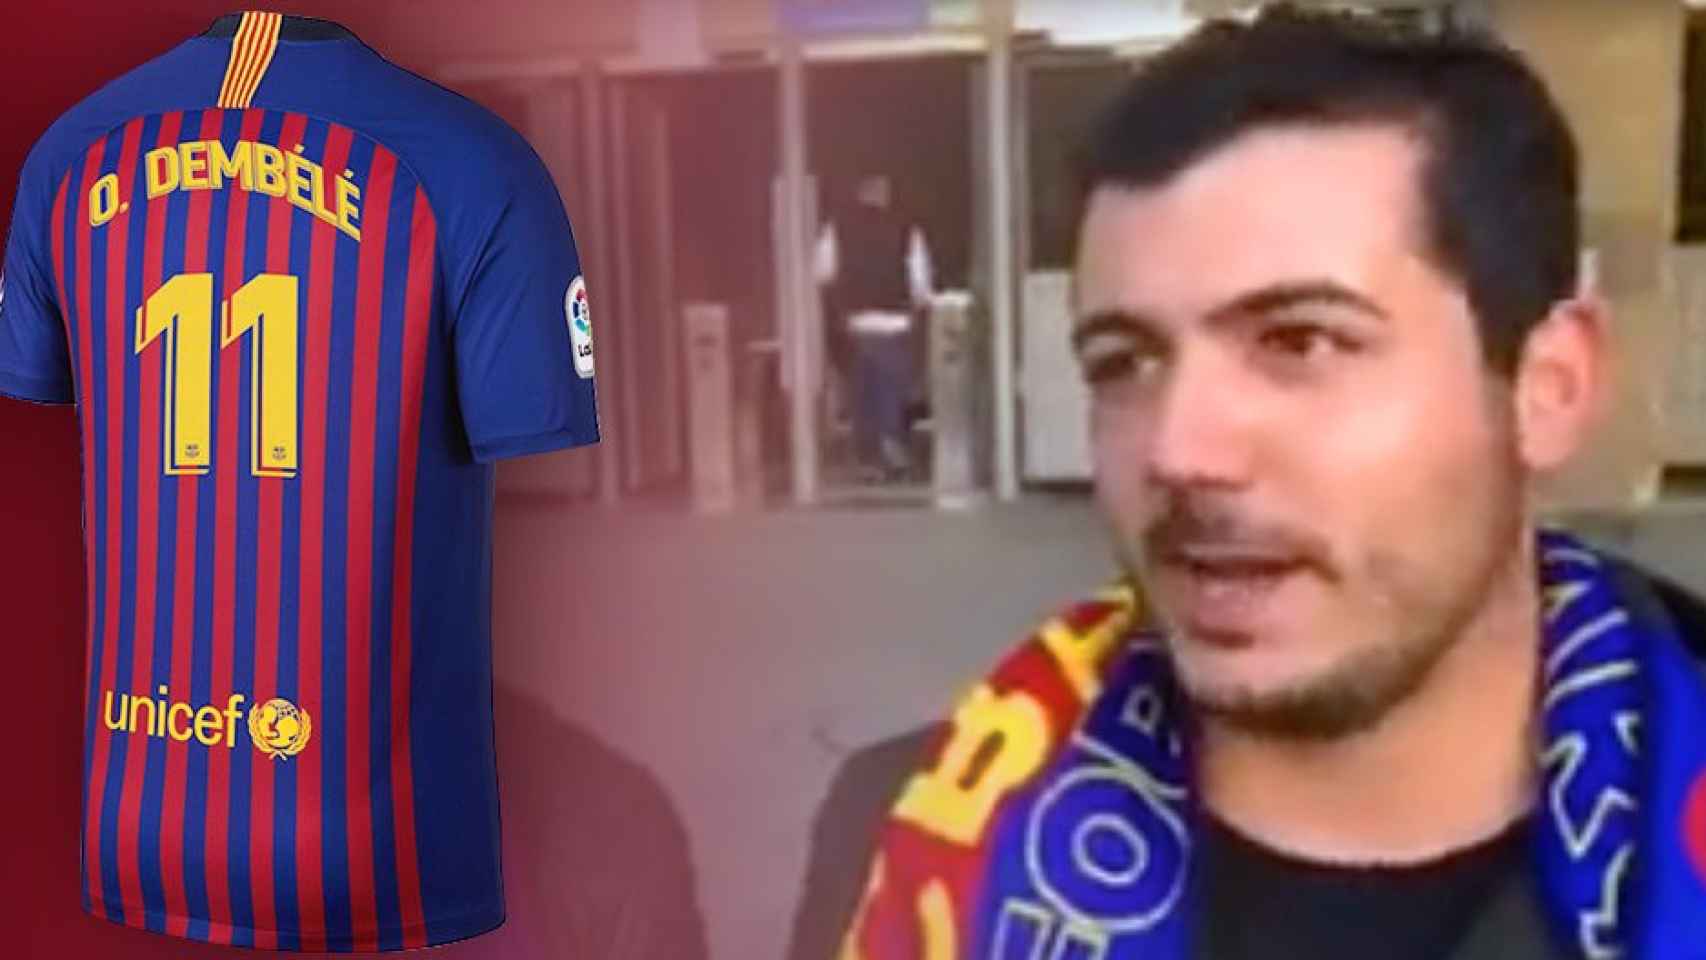 La camiseta de Dembelé y un aficionado del Barça / FOTOMONTAJE DE CULEMANÍA